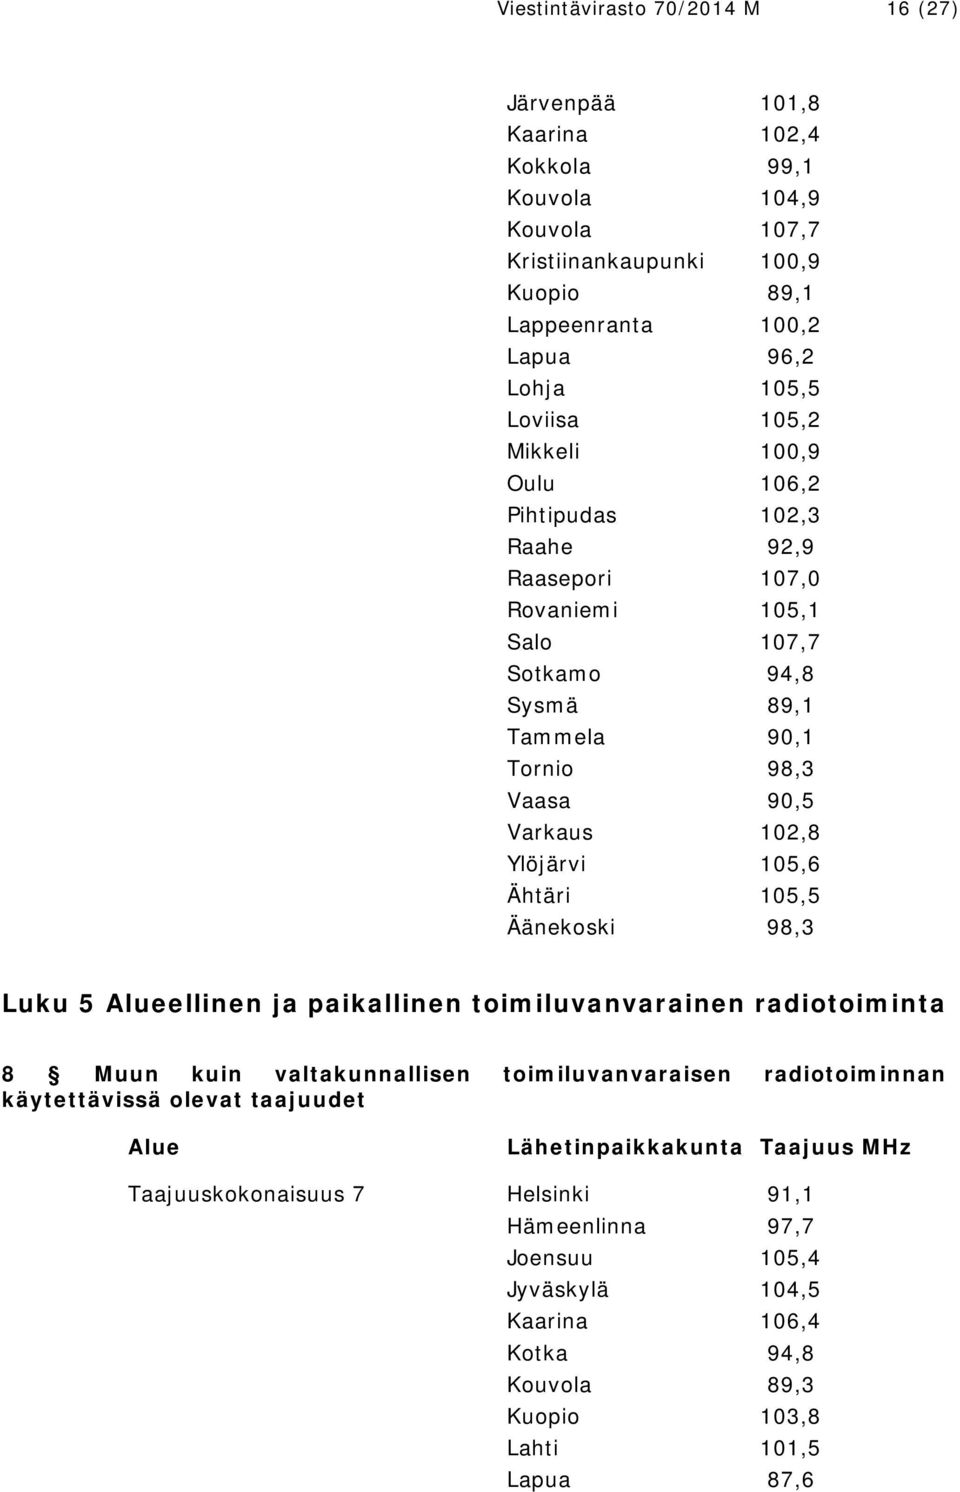 Ylöjärvi 105,6 Ähtäri 105,5 Äänekoski 98,3 Luku 5 Alueellinen ja paikallinen toimiluvanvarainen radiotoiminta 8 Muun kuin valtakunnallisen toimiluvanvaraisen radiotoiminnan käytettävissä